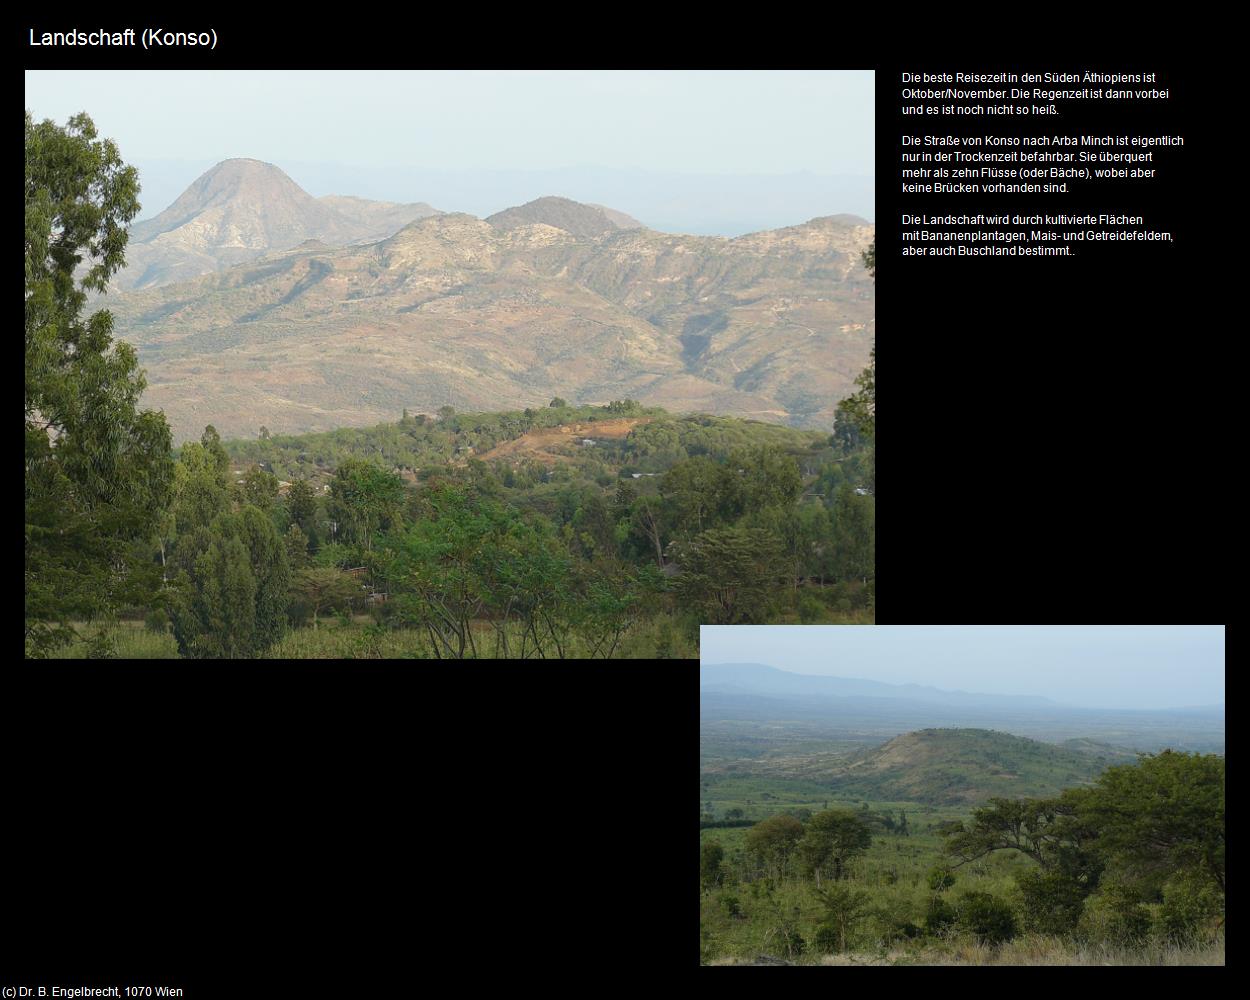 Landschaft (Konso) in Äthiopien